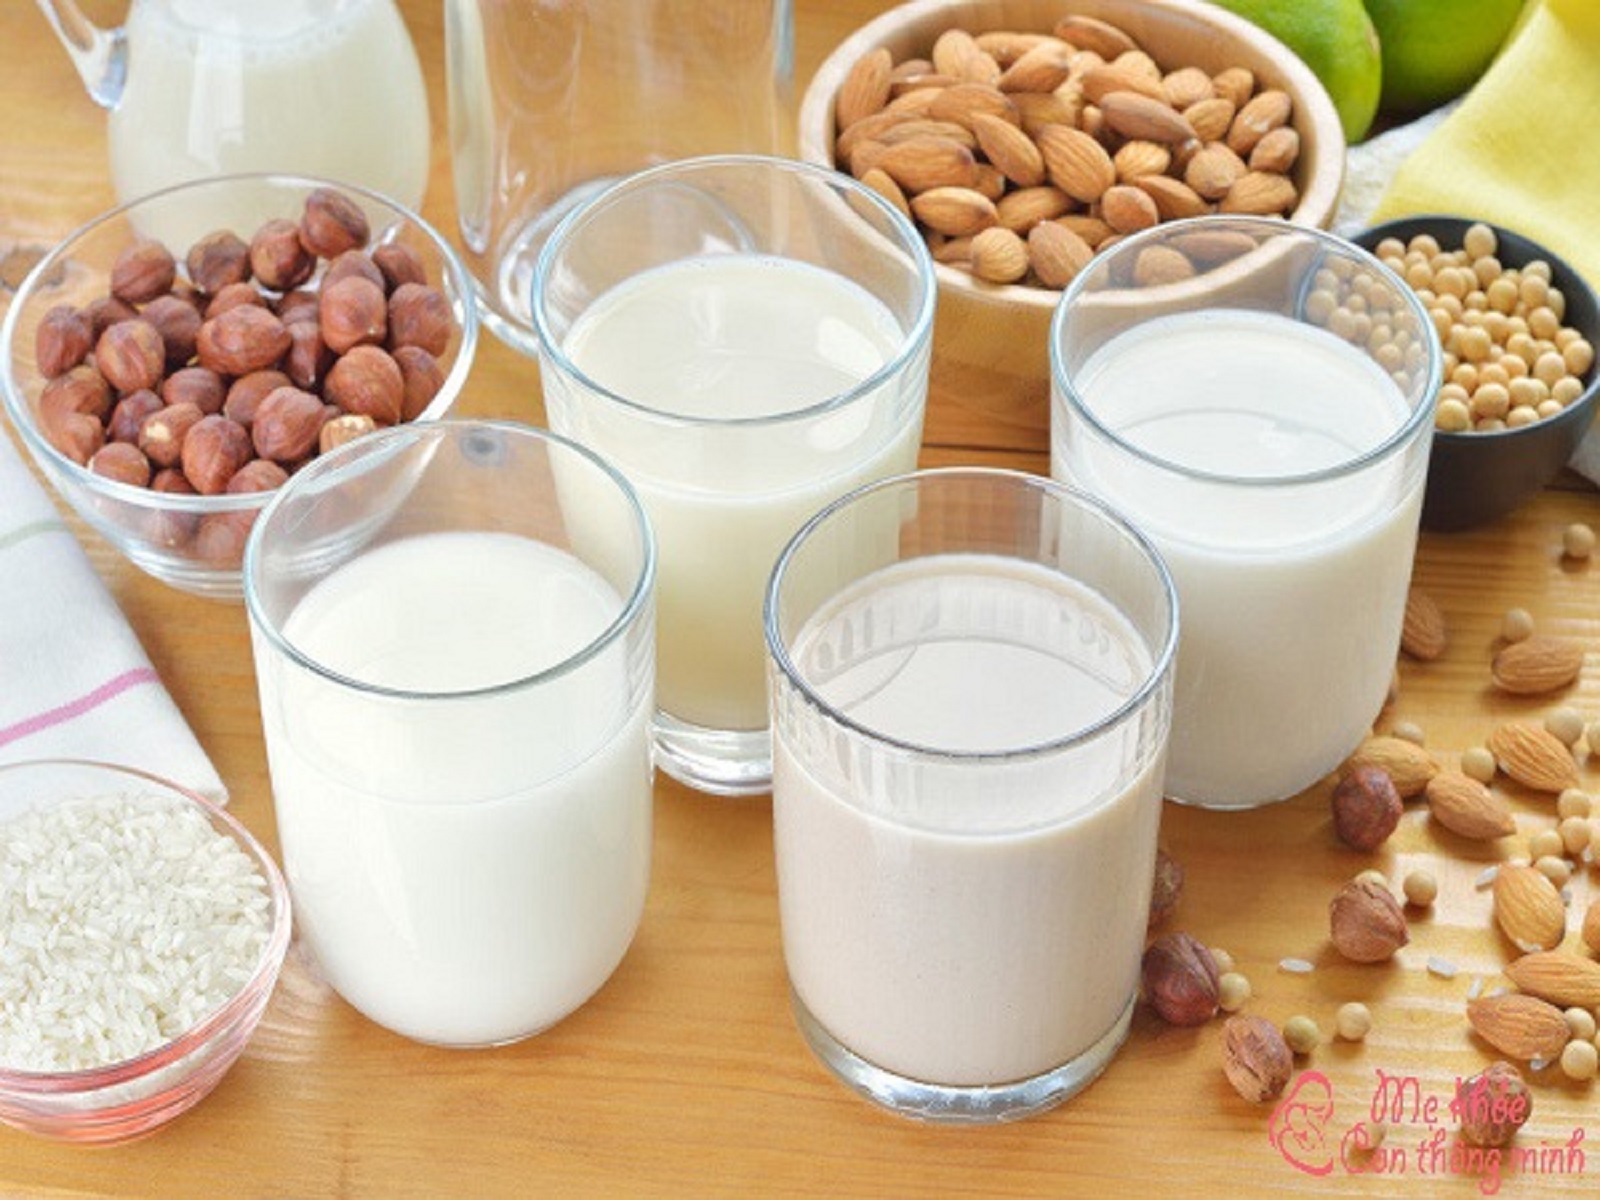 Tiểu đường uống sữa hạt được không? Uống thế nào hiệu quả?